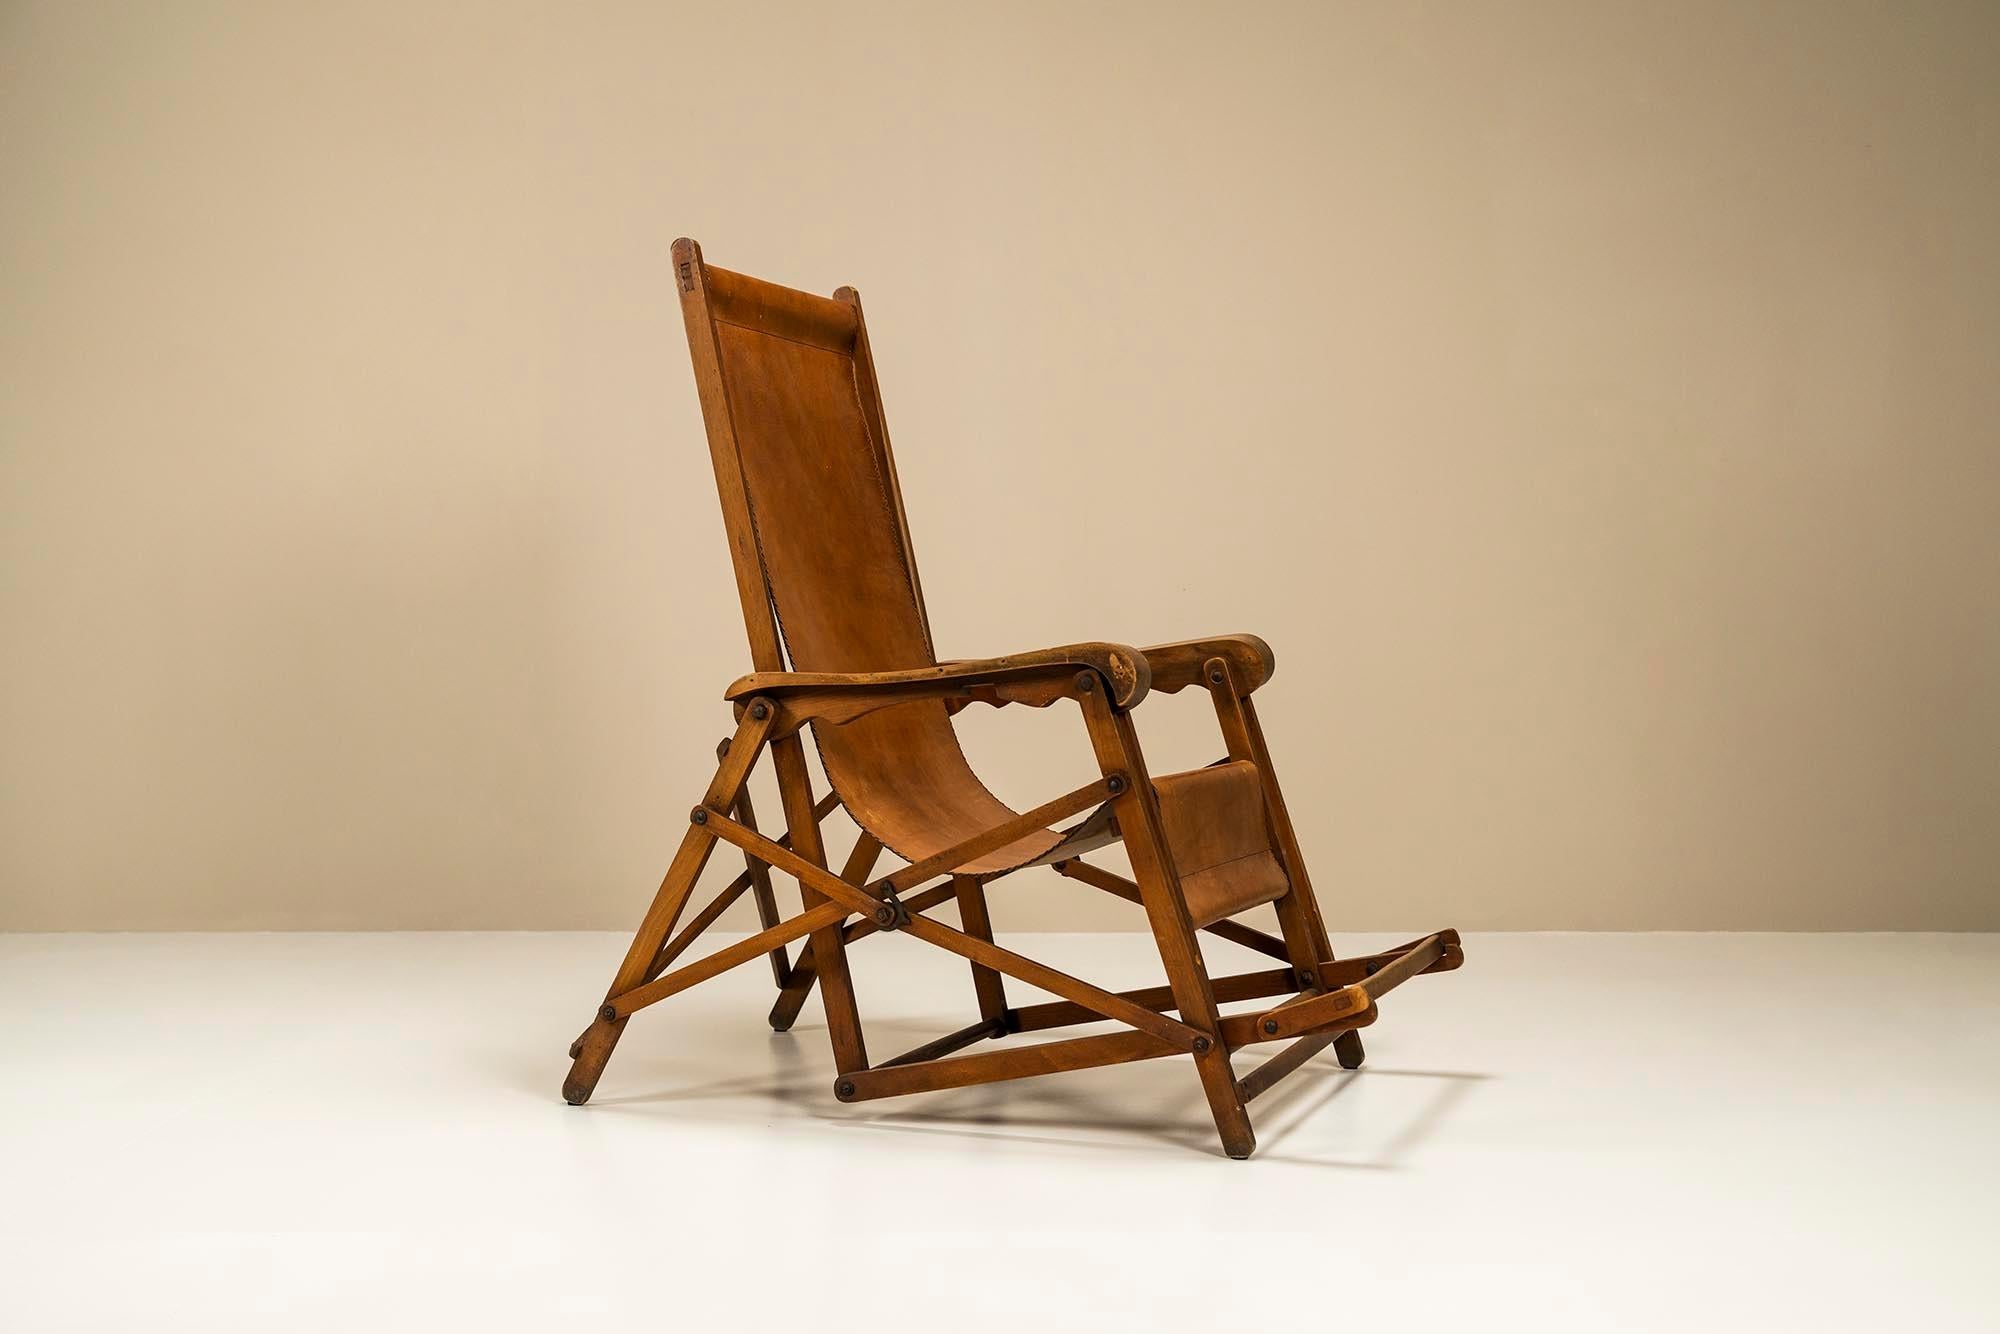 Une chaise longue, conçue en 1938 par Fratelli Reguitti en collaboration avec Louis Vuitton, est un véritable chef-d'œuvre d'artisanat et de design. Cette chaise est un parfait exemple de la qualité exceptionnelle et de l'attention portée aux